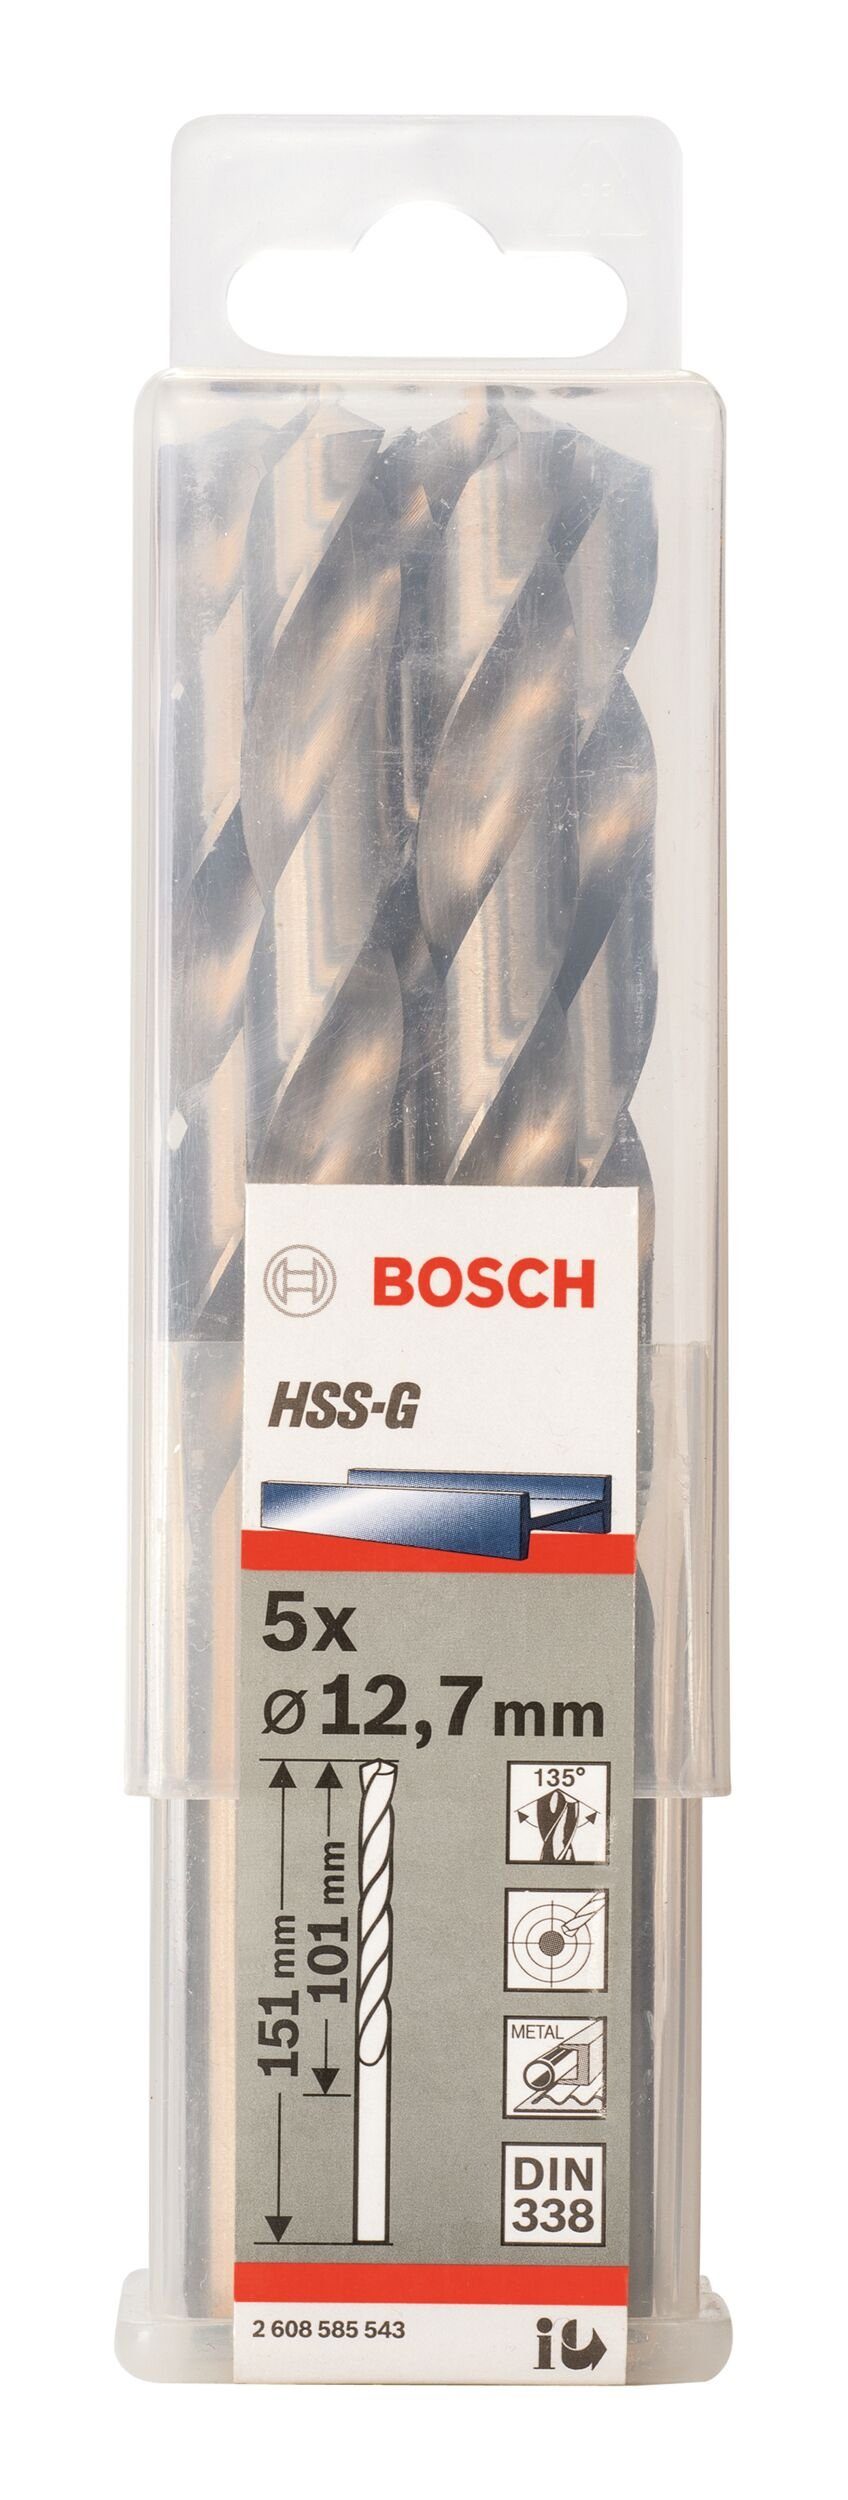 x BOSCH 101 HSS-G - mm (DIN 12,7 x 5er-Pack Metallbohrer, 151 - Stück), 338) (5